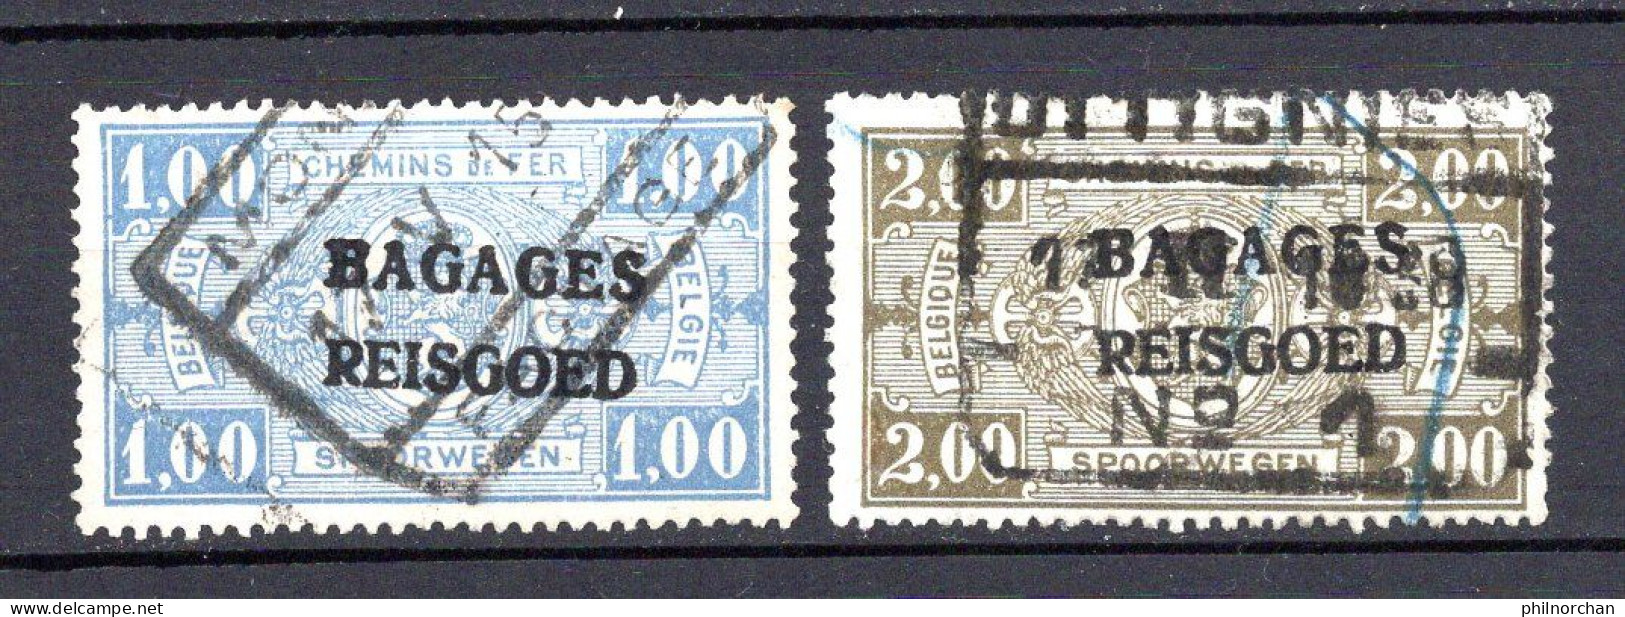 Belgique 1936 Bagages N°10,11 Oblitérés  0,40 €  (cote 5 €, 2 Valeurs) - Reisgoedzegels [BA]